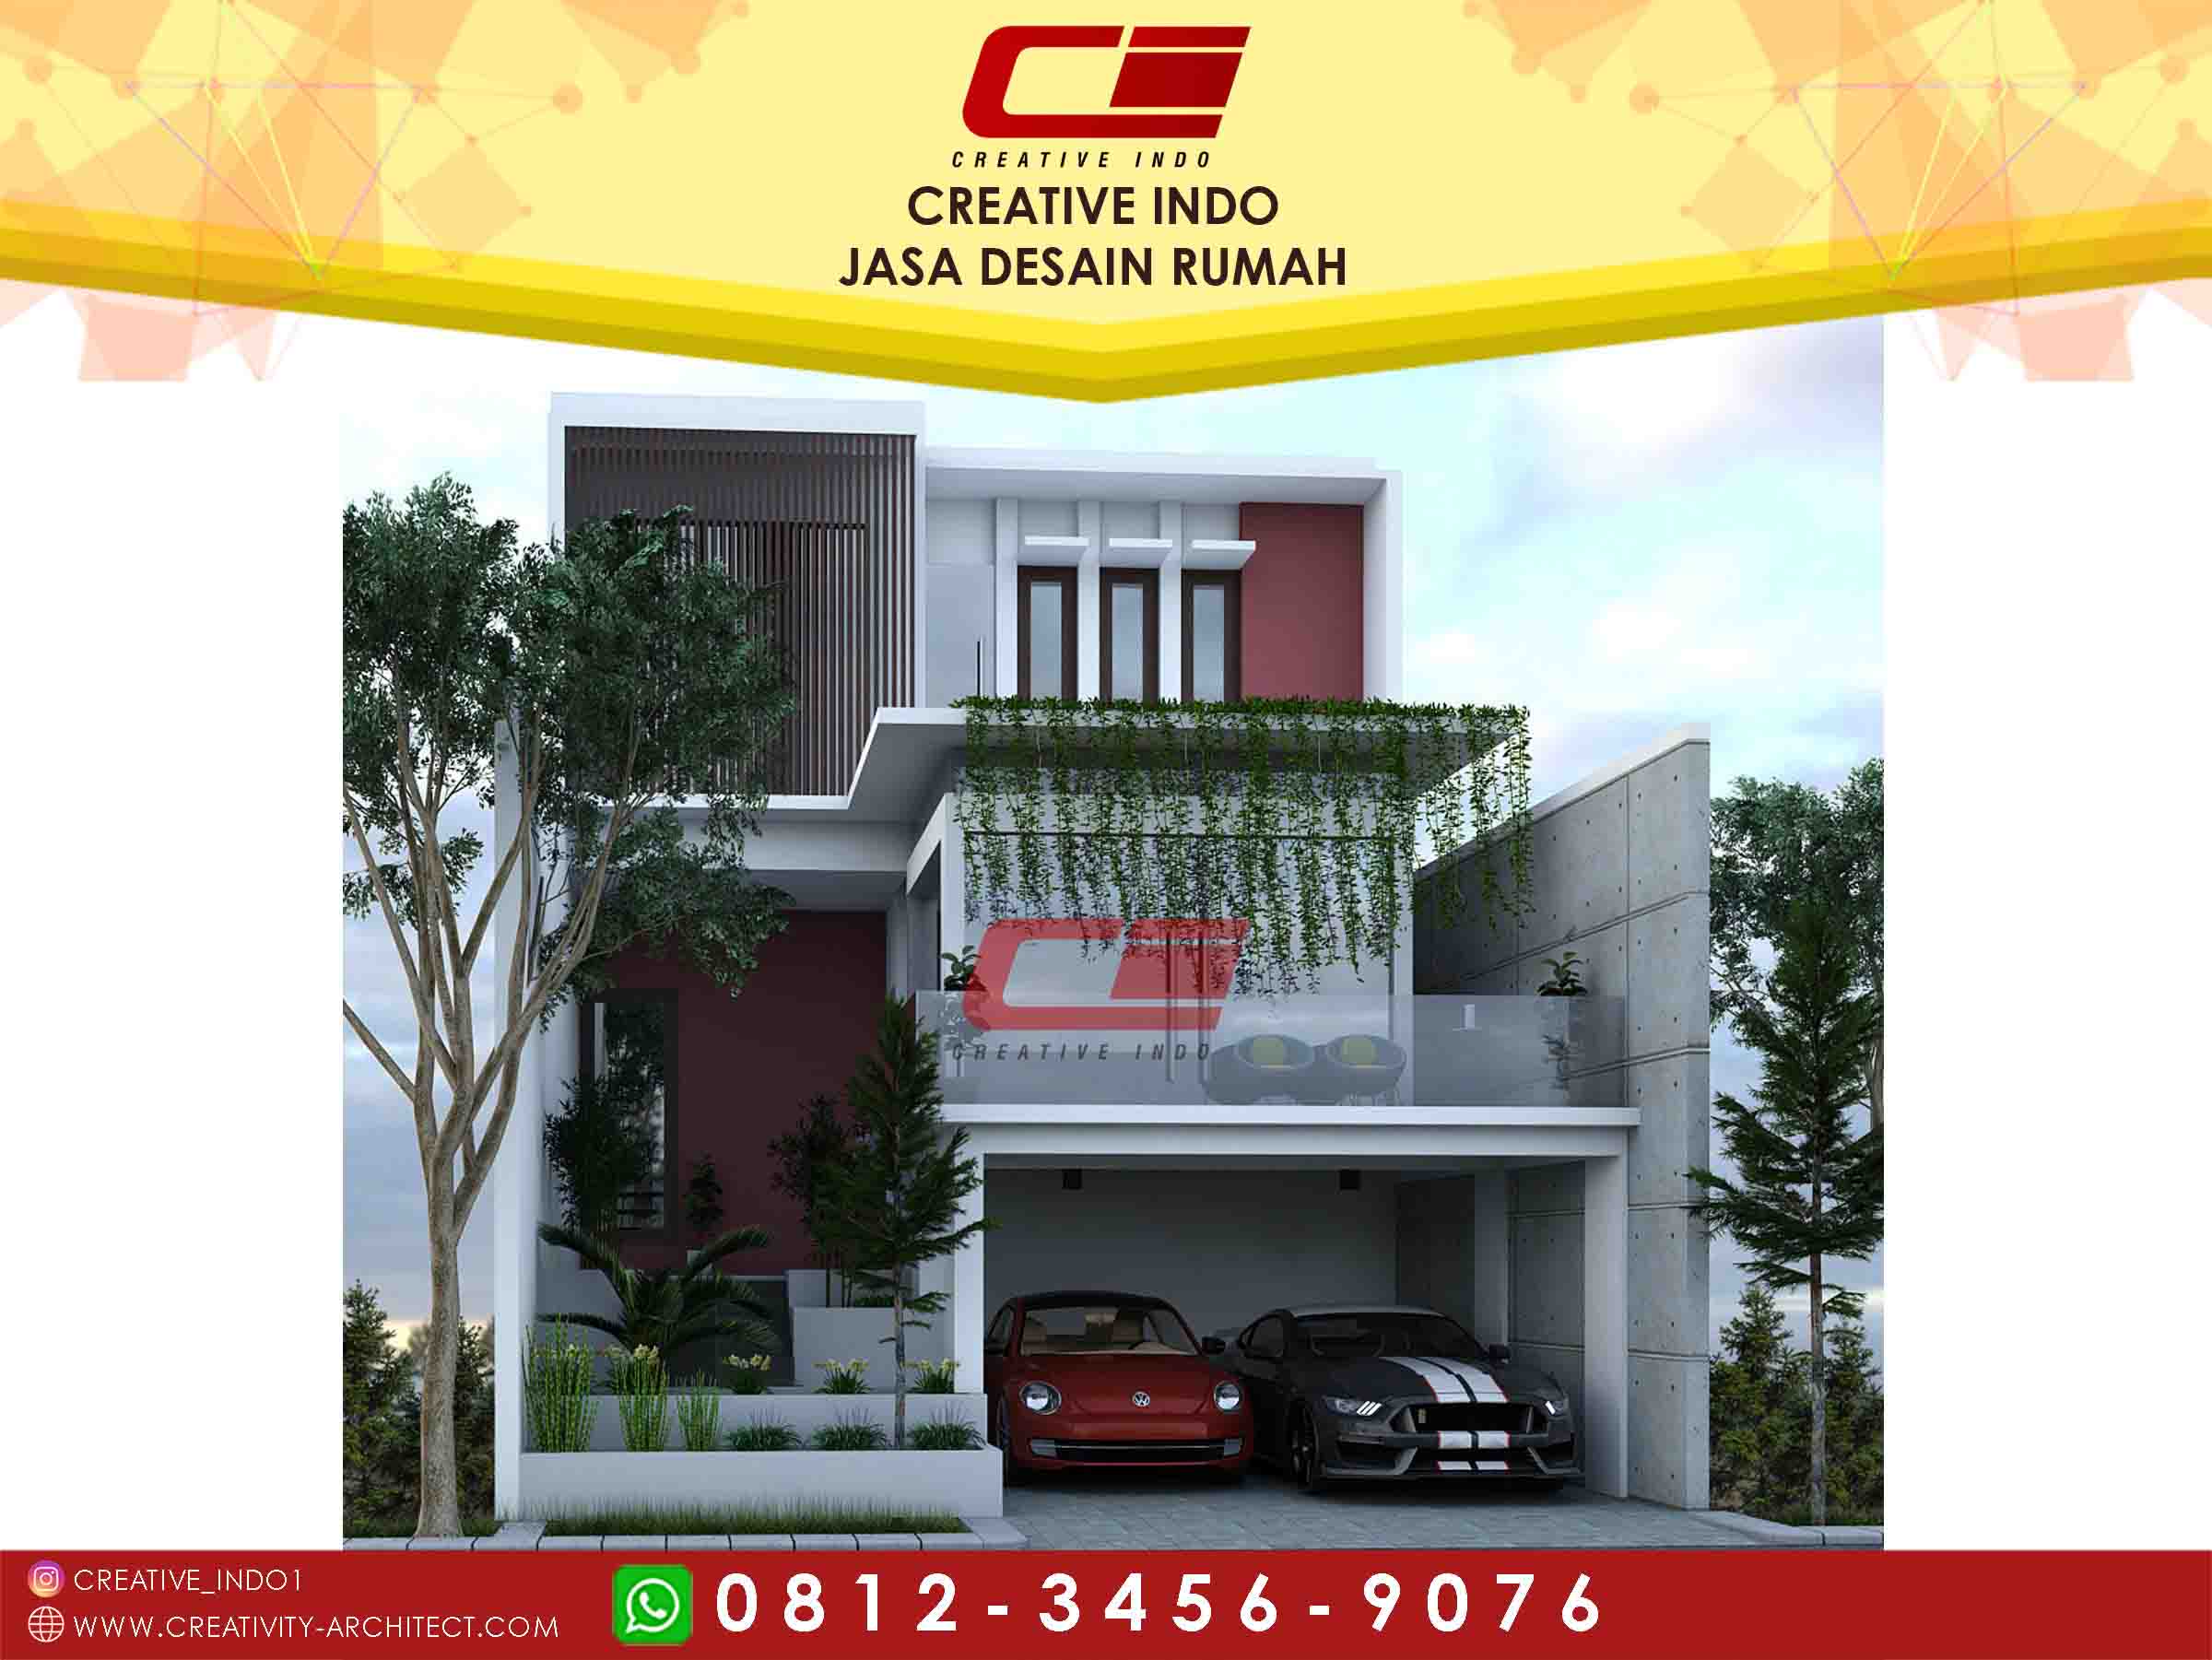 Jasa Desain Rumah Semarang